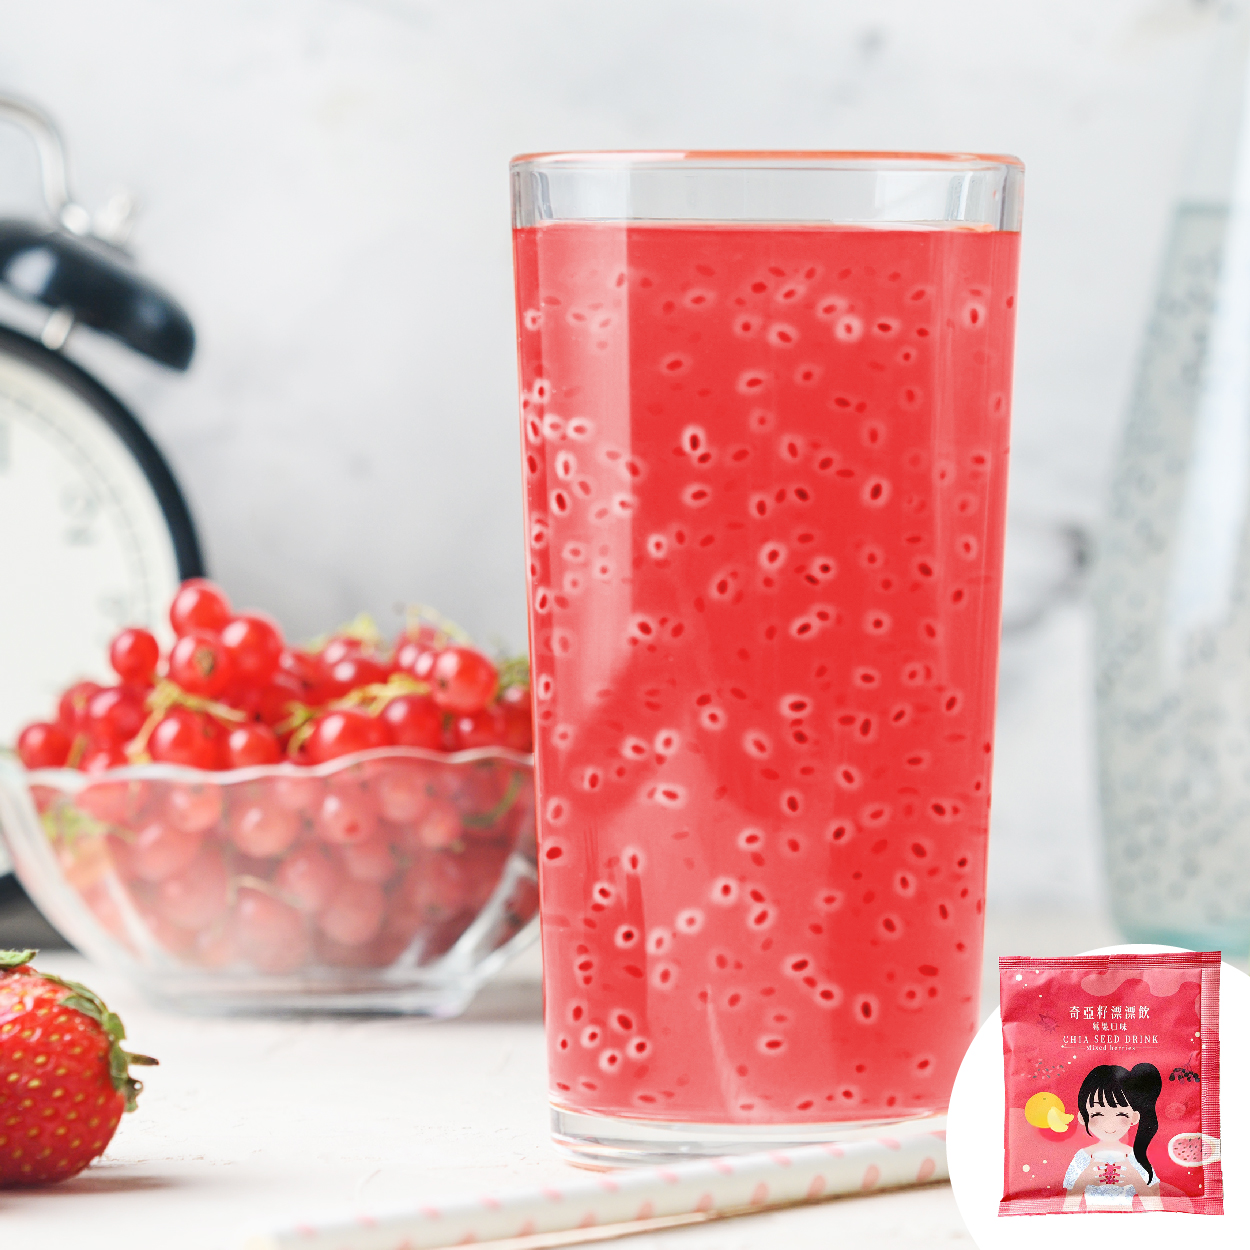 午茶夫人 奇亞籽漂漂飲(莓果口味) 養顏美容 促進消化 酸酸甜甜好滋味